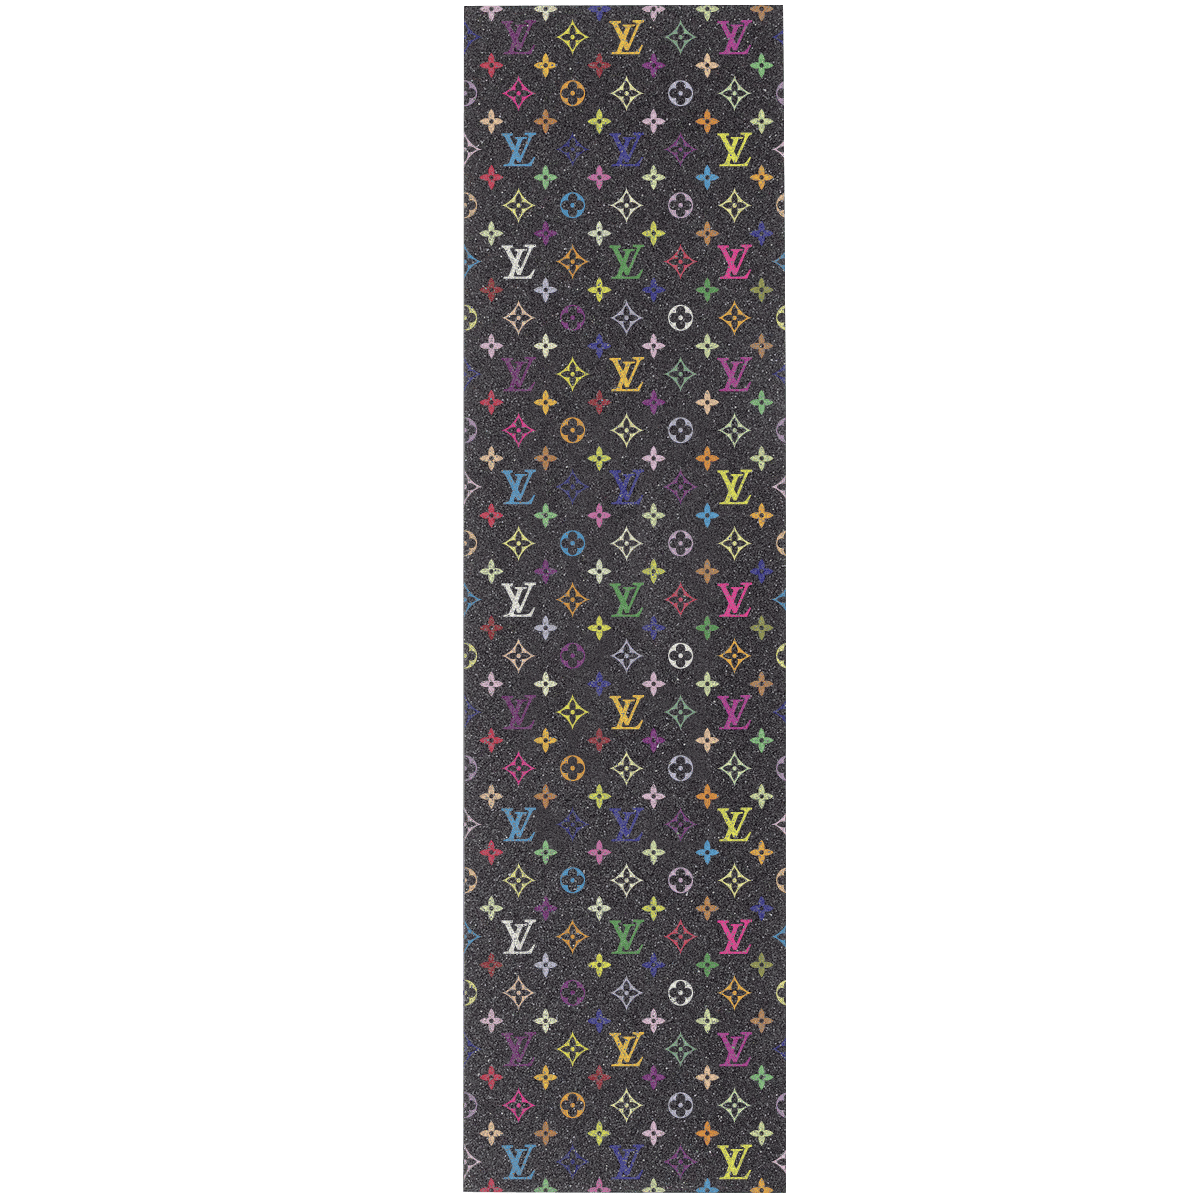 Louis Vuitton Monogram Multicolore Carnet De Notes M92652 Black